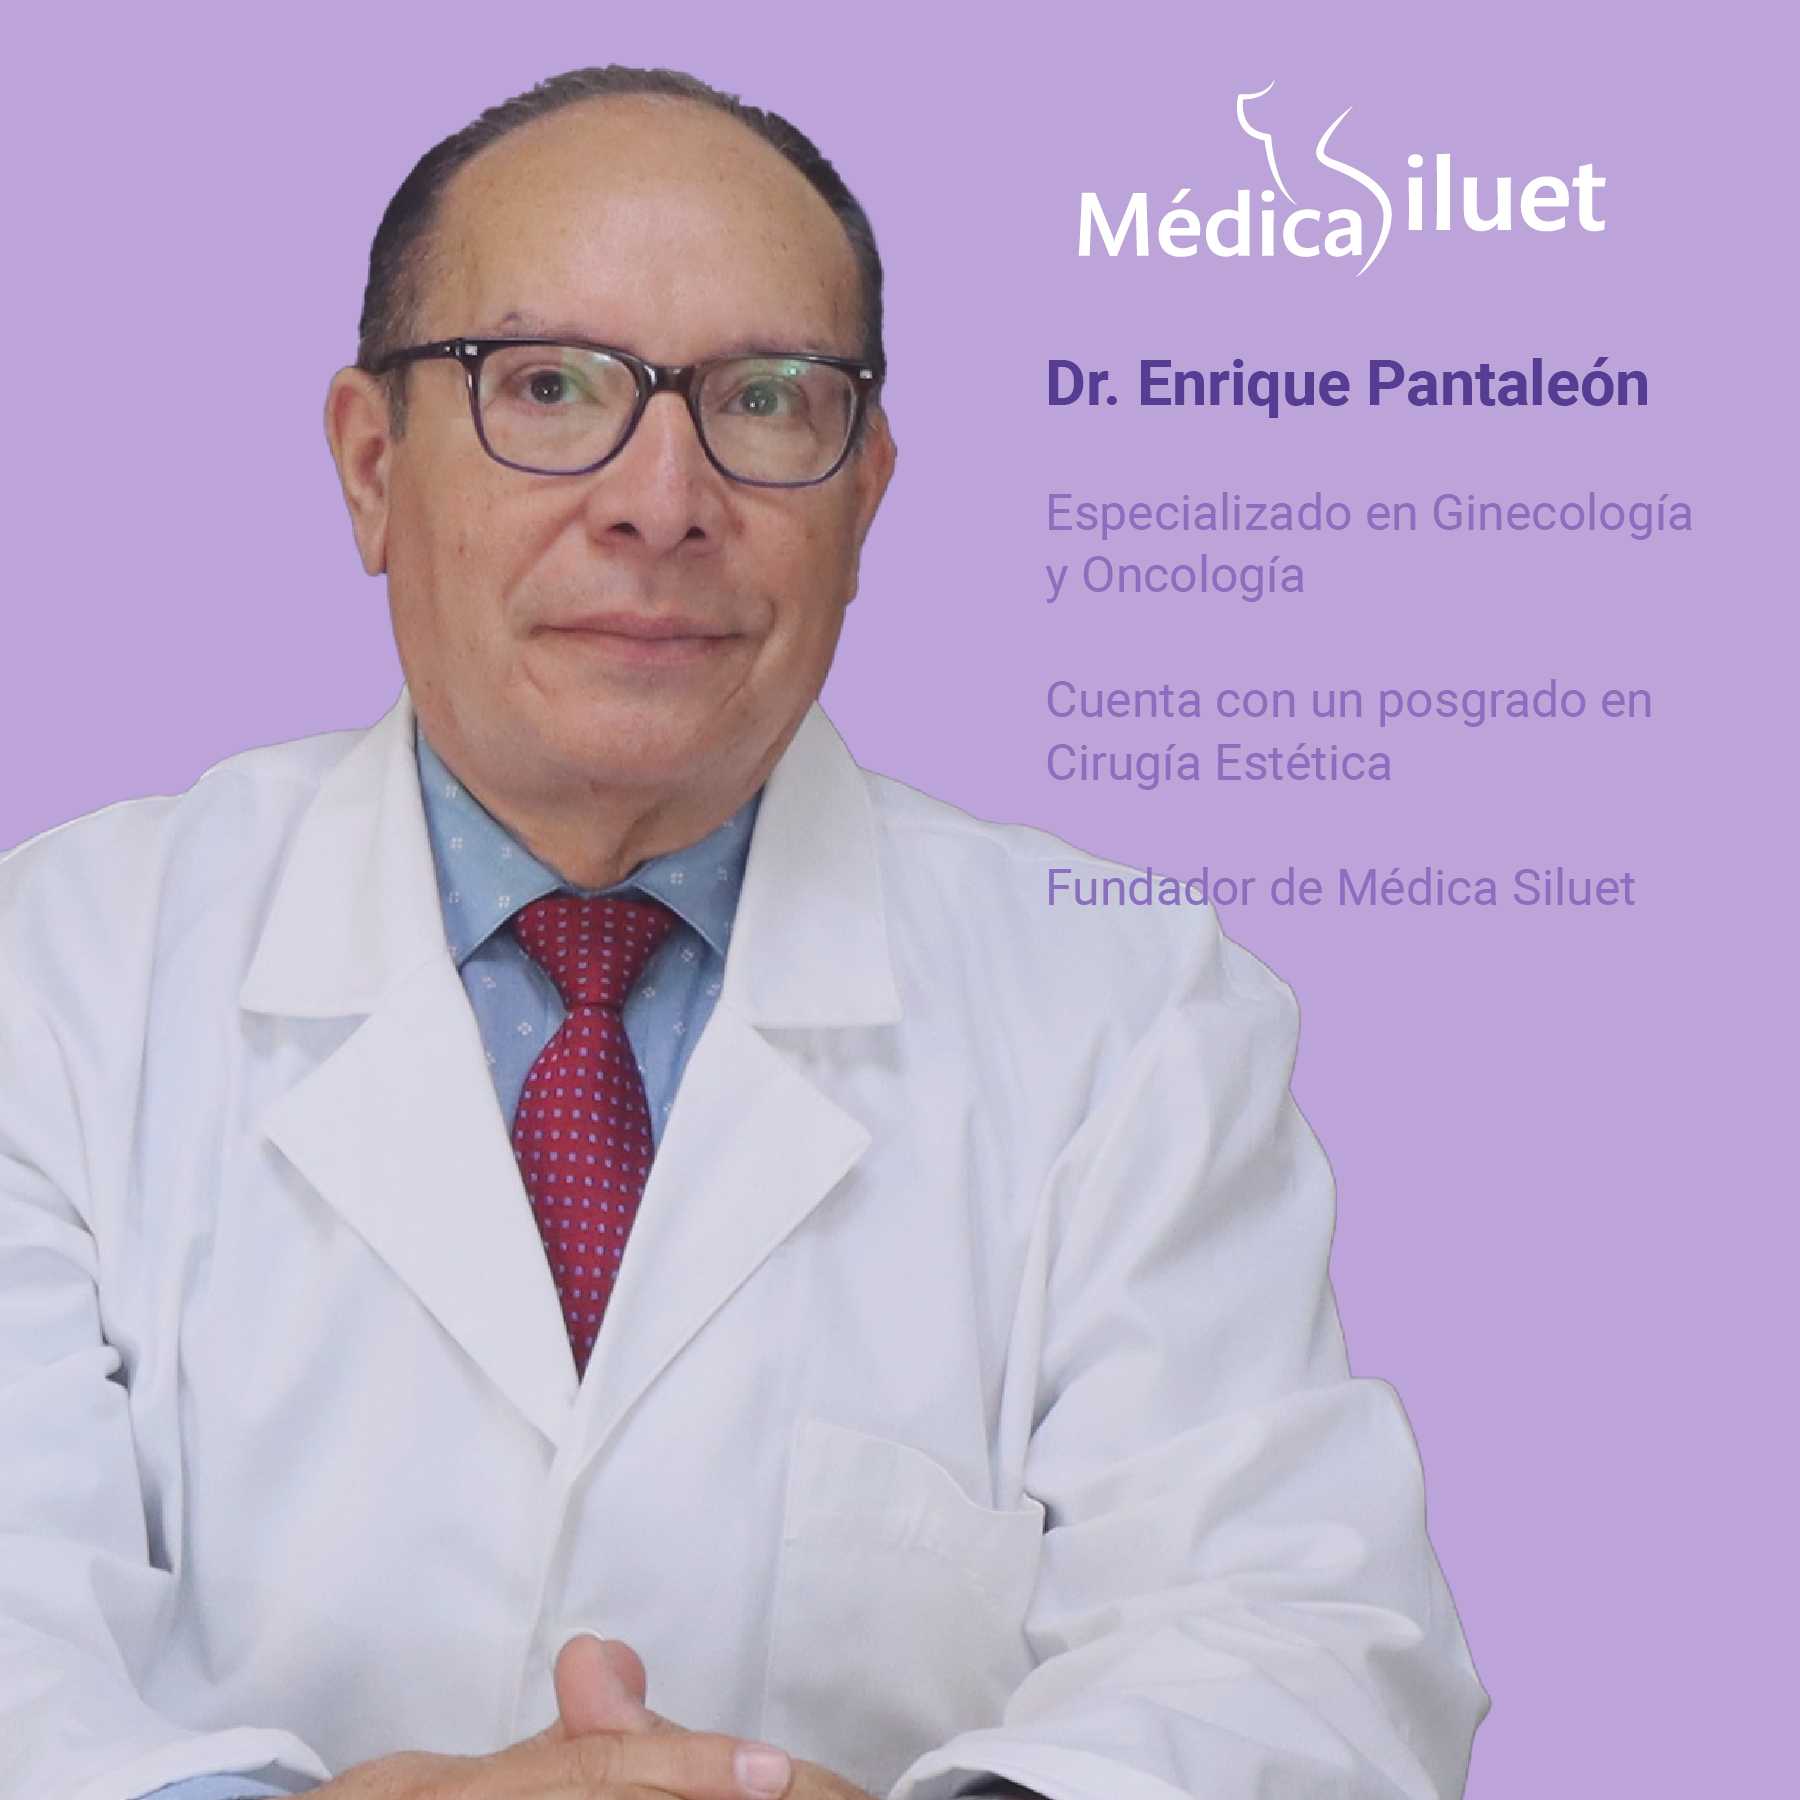 Dr. Enrique Pantaleon